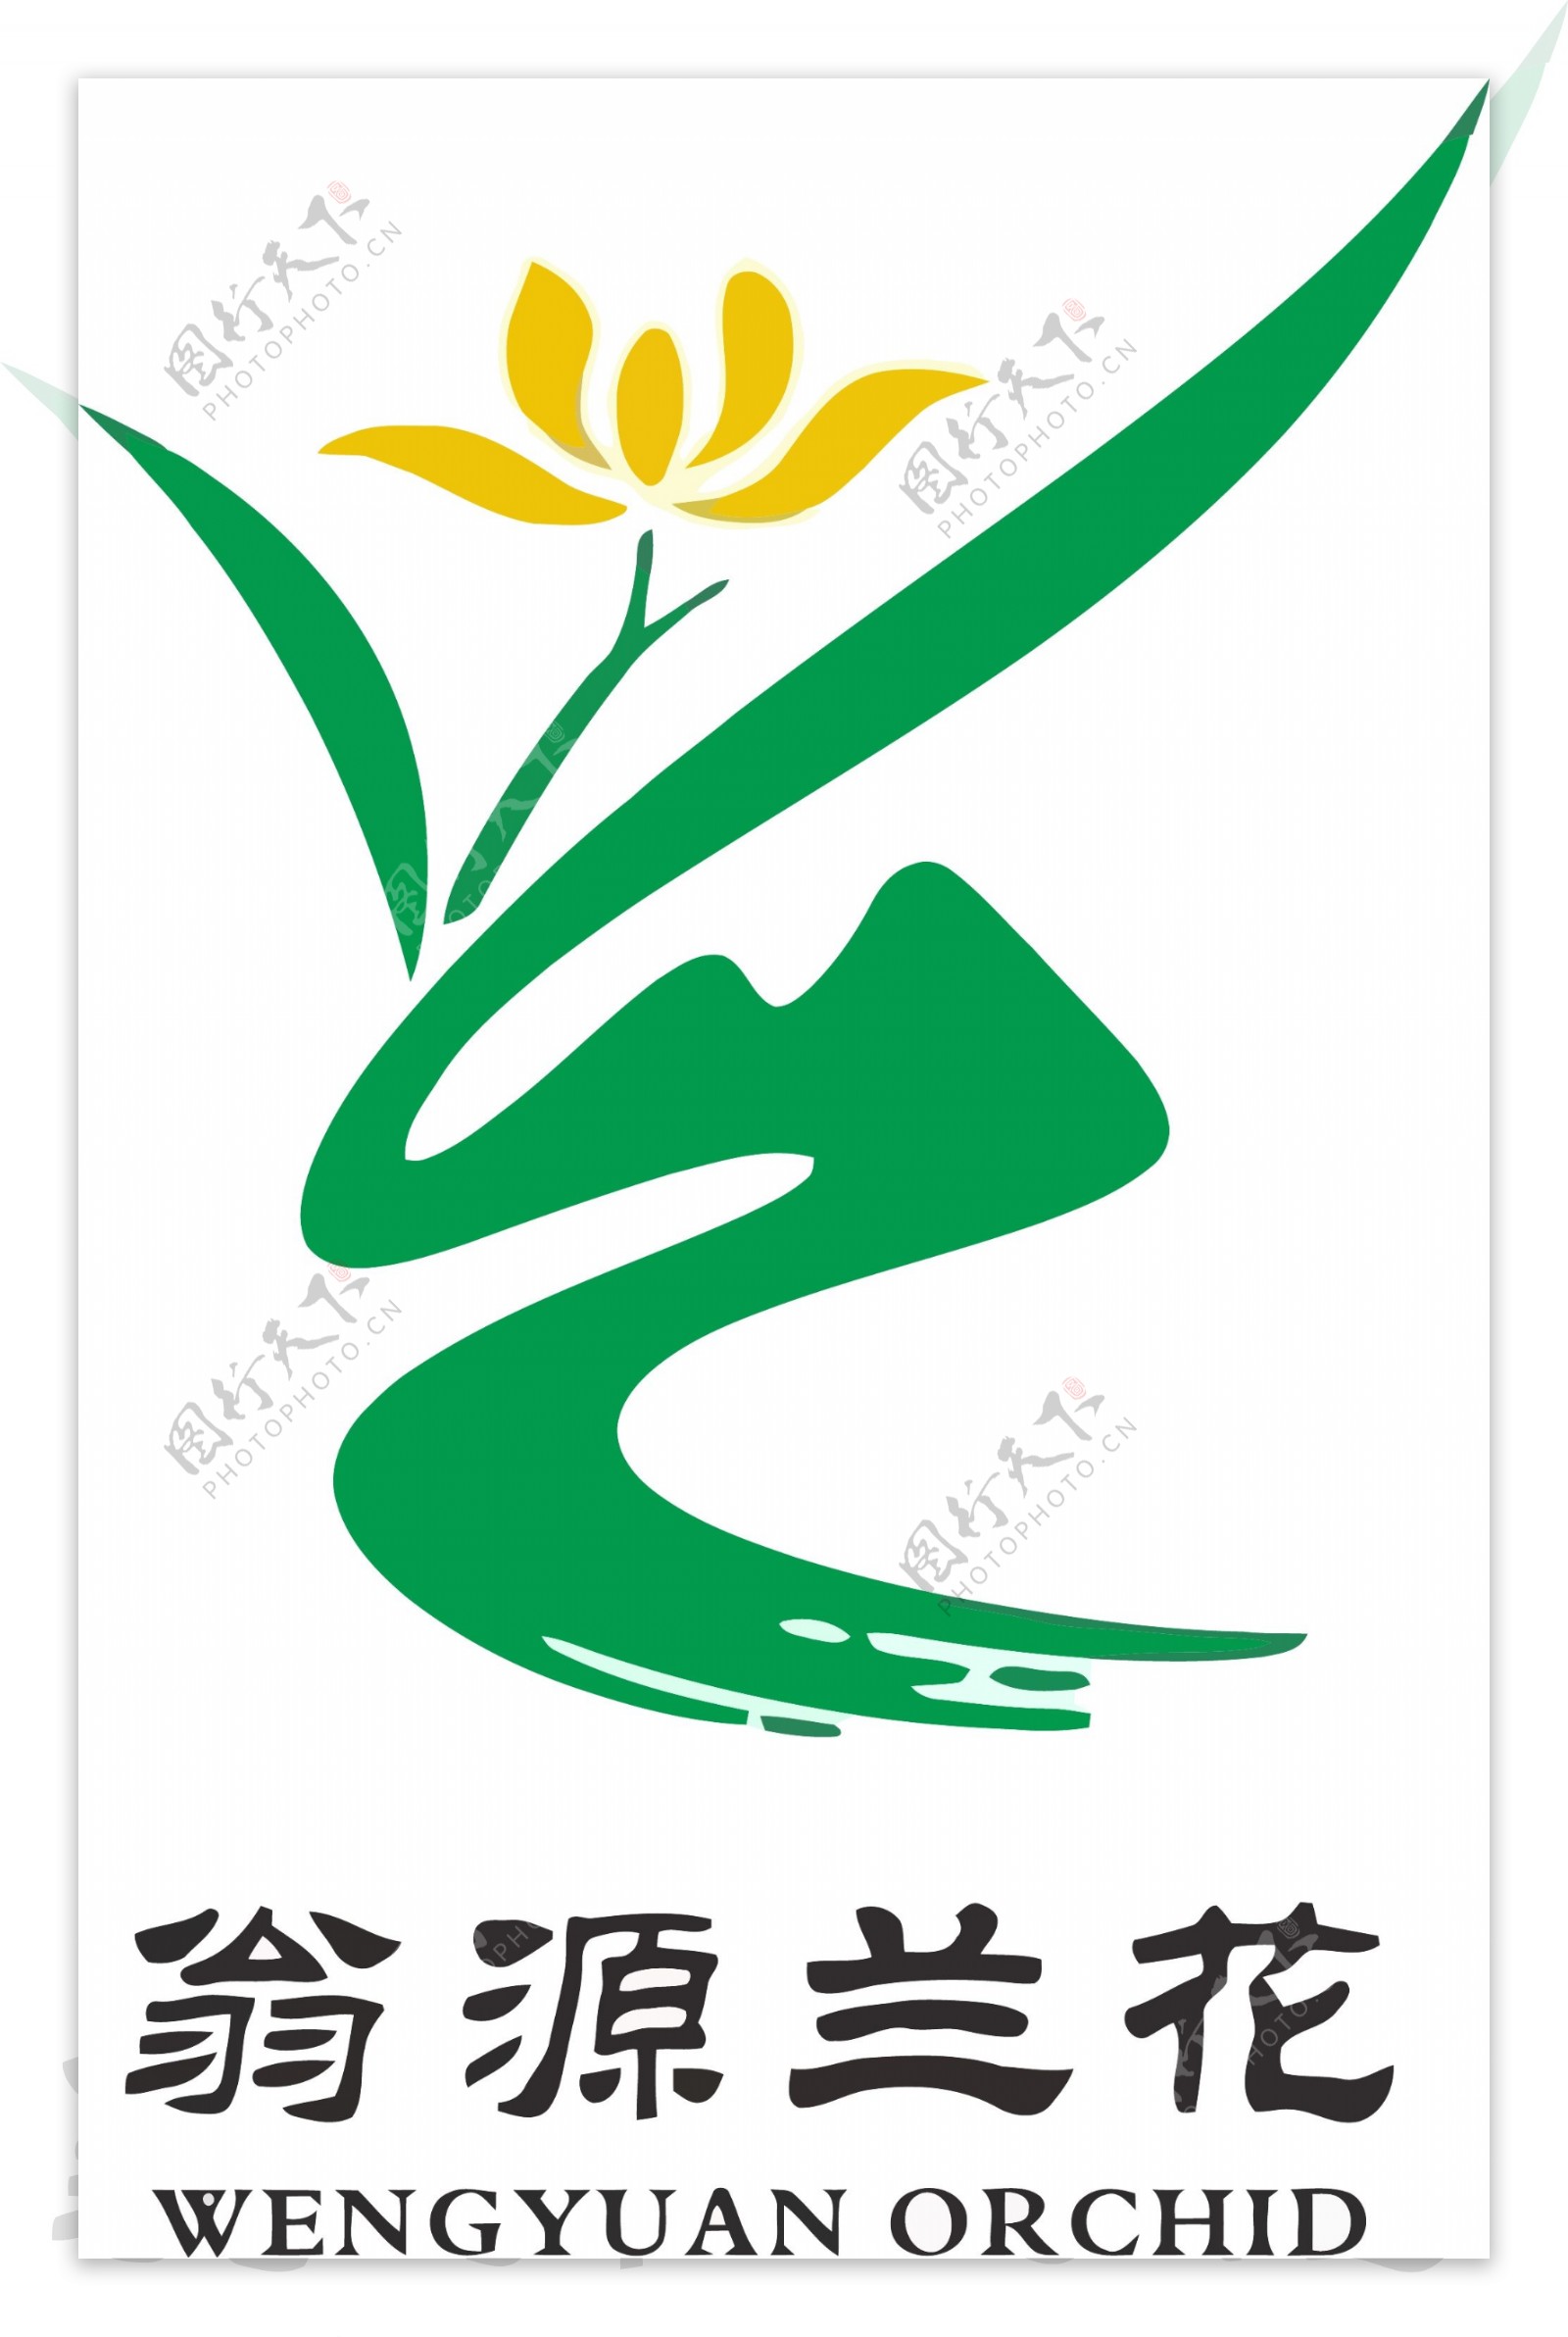 翁源兰花节logo